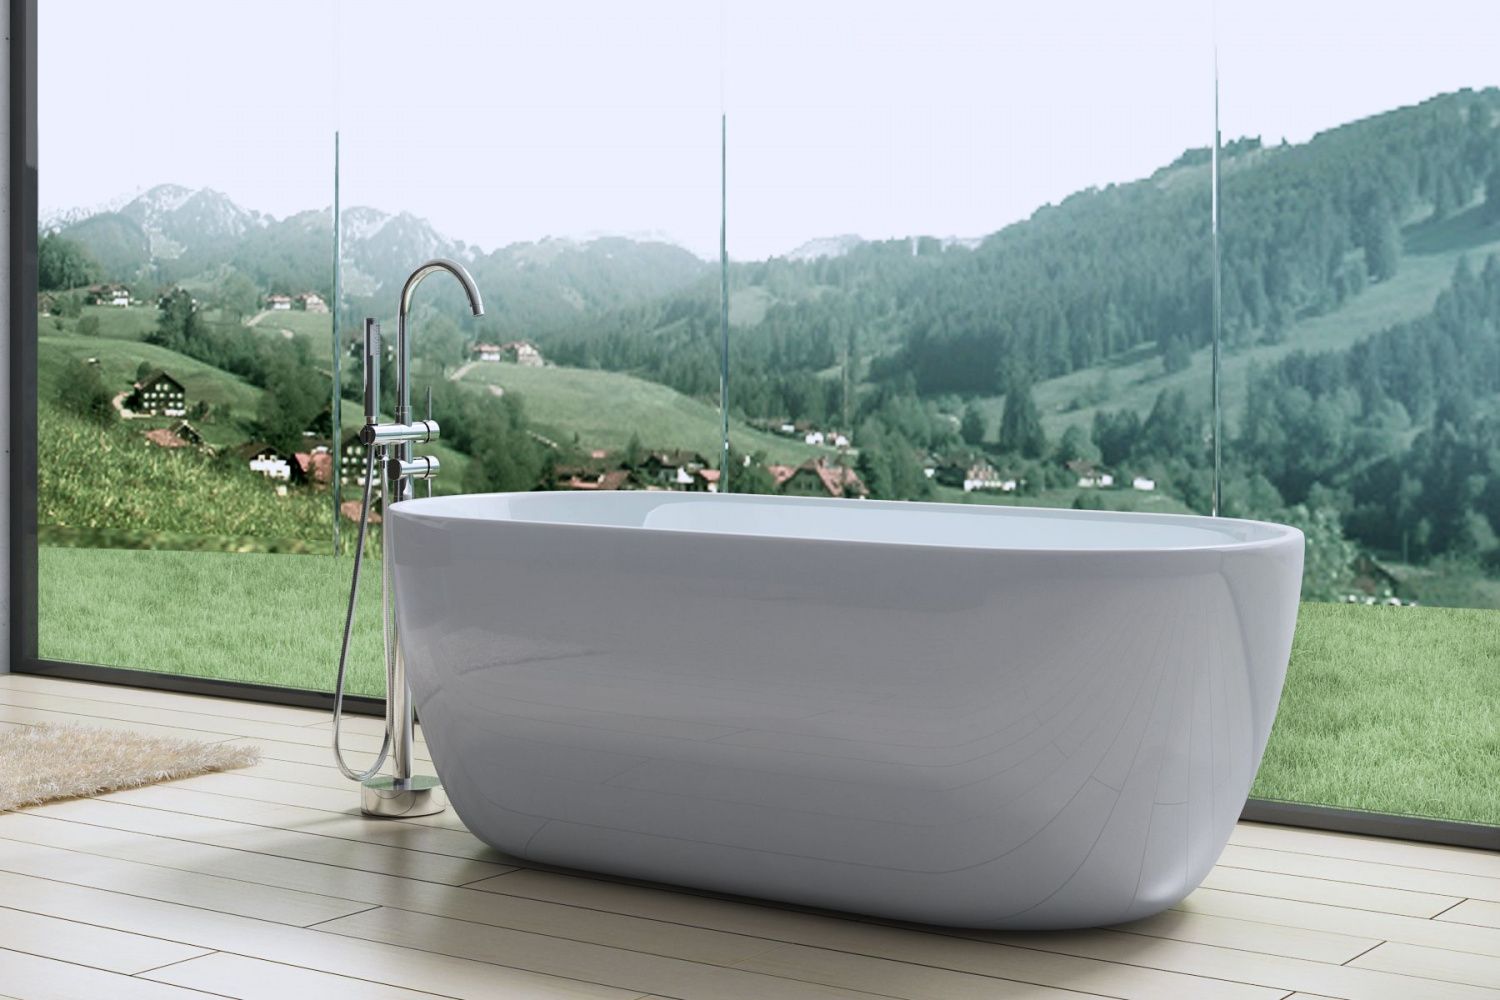 Акриловая ванна AM-518-1500-750